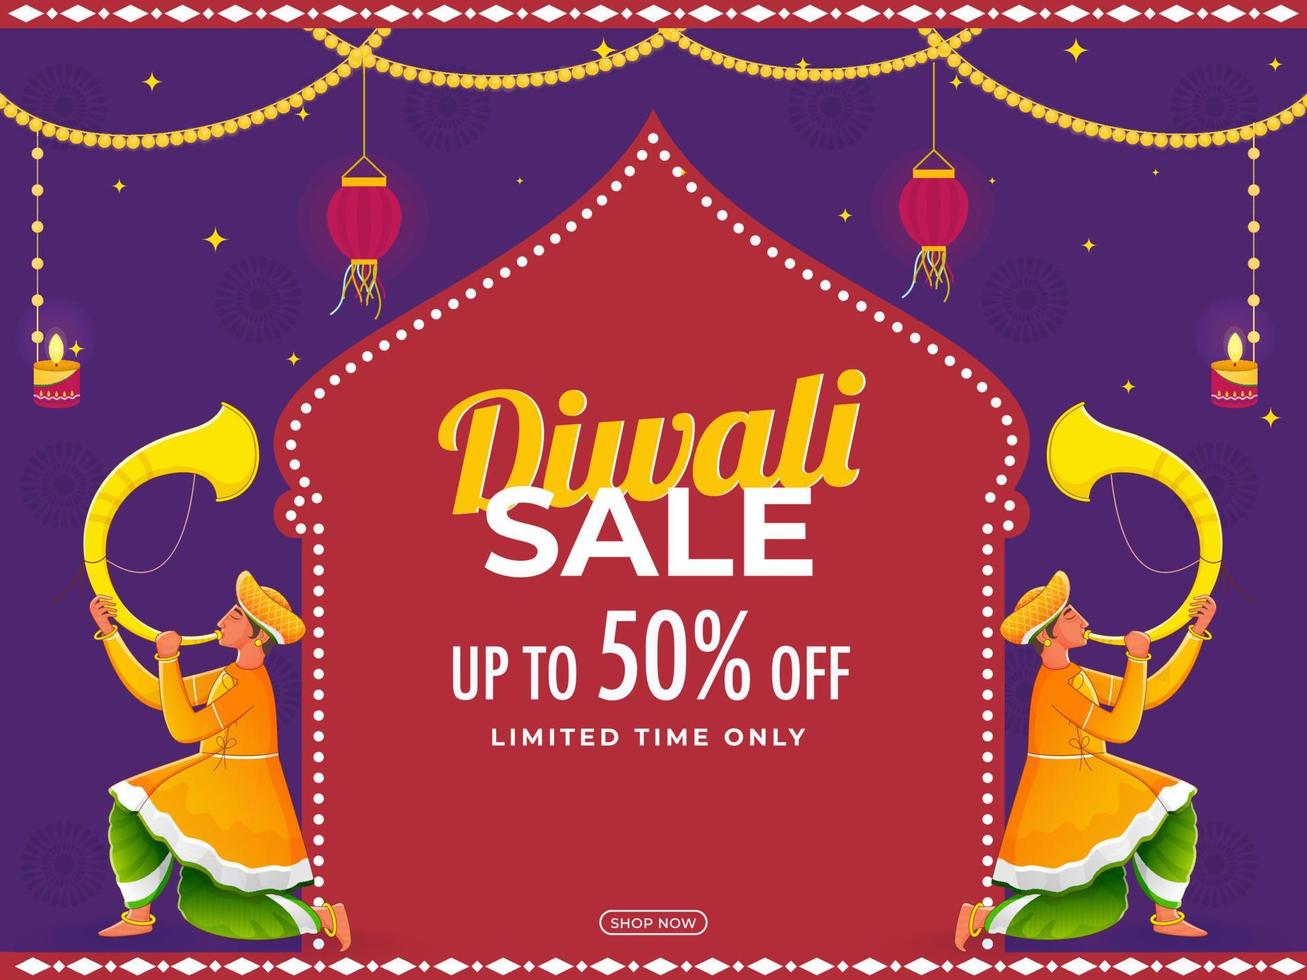 Diwali Verkauf Poster Design mit traditionell tutari Spieler Illustration. vektor